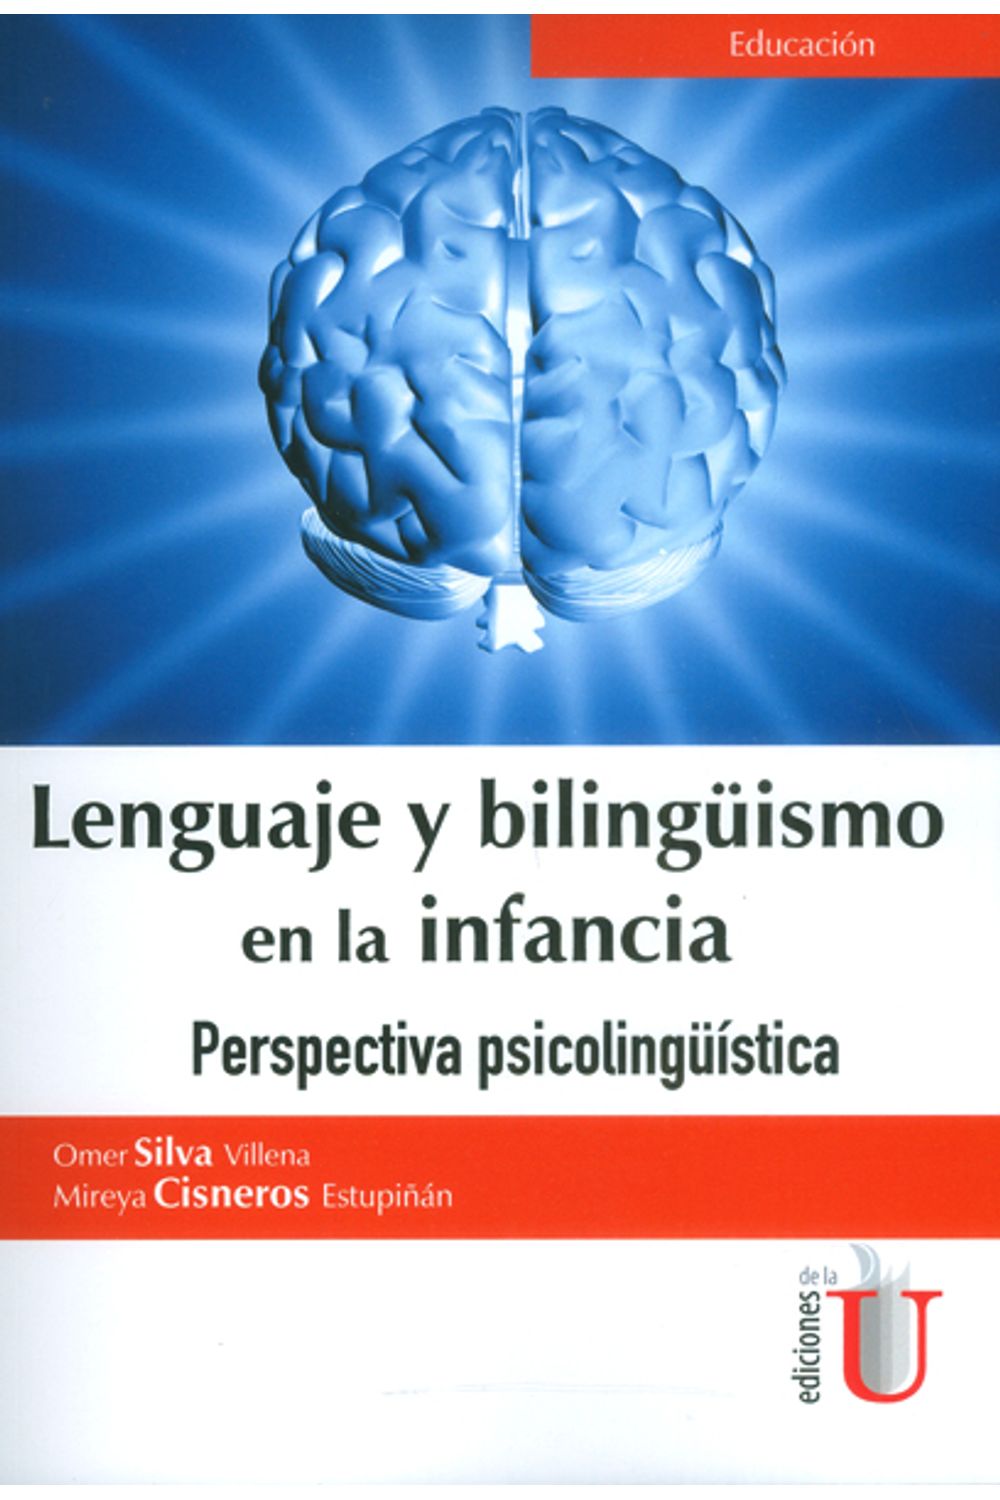 lenguaje-y-billinguismo-en-la-infancia-9789587626179-ediu